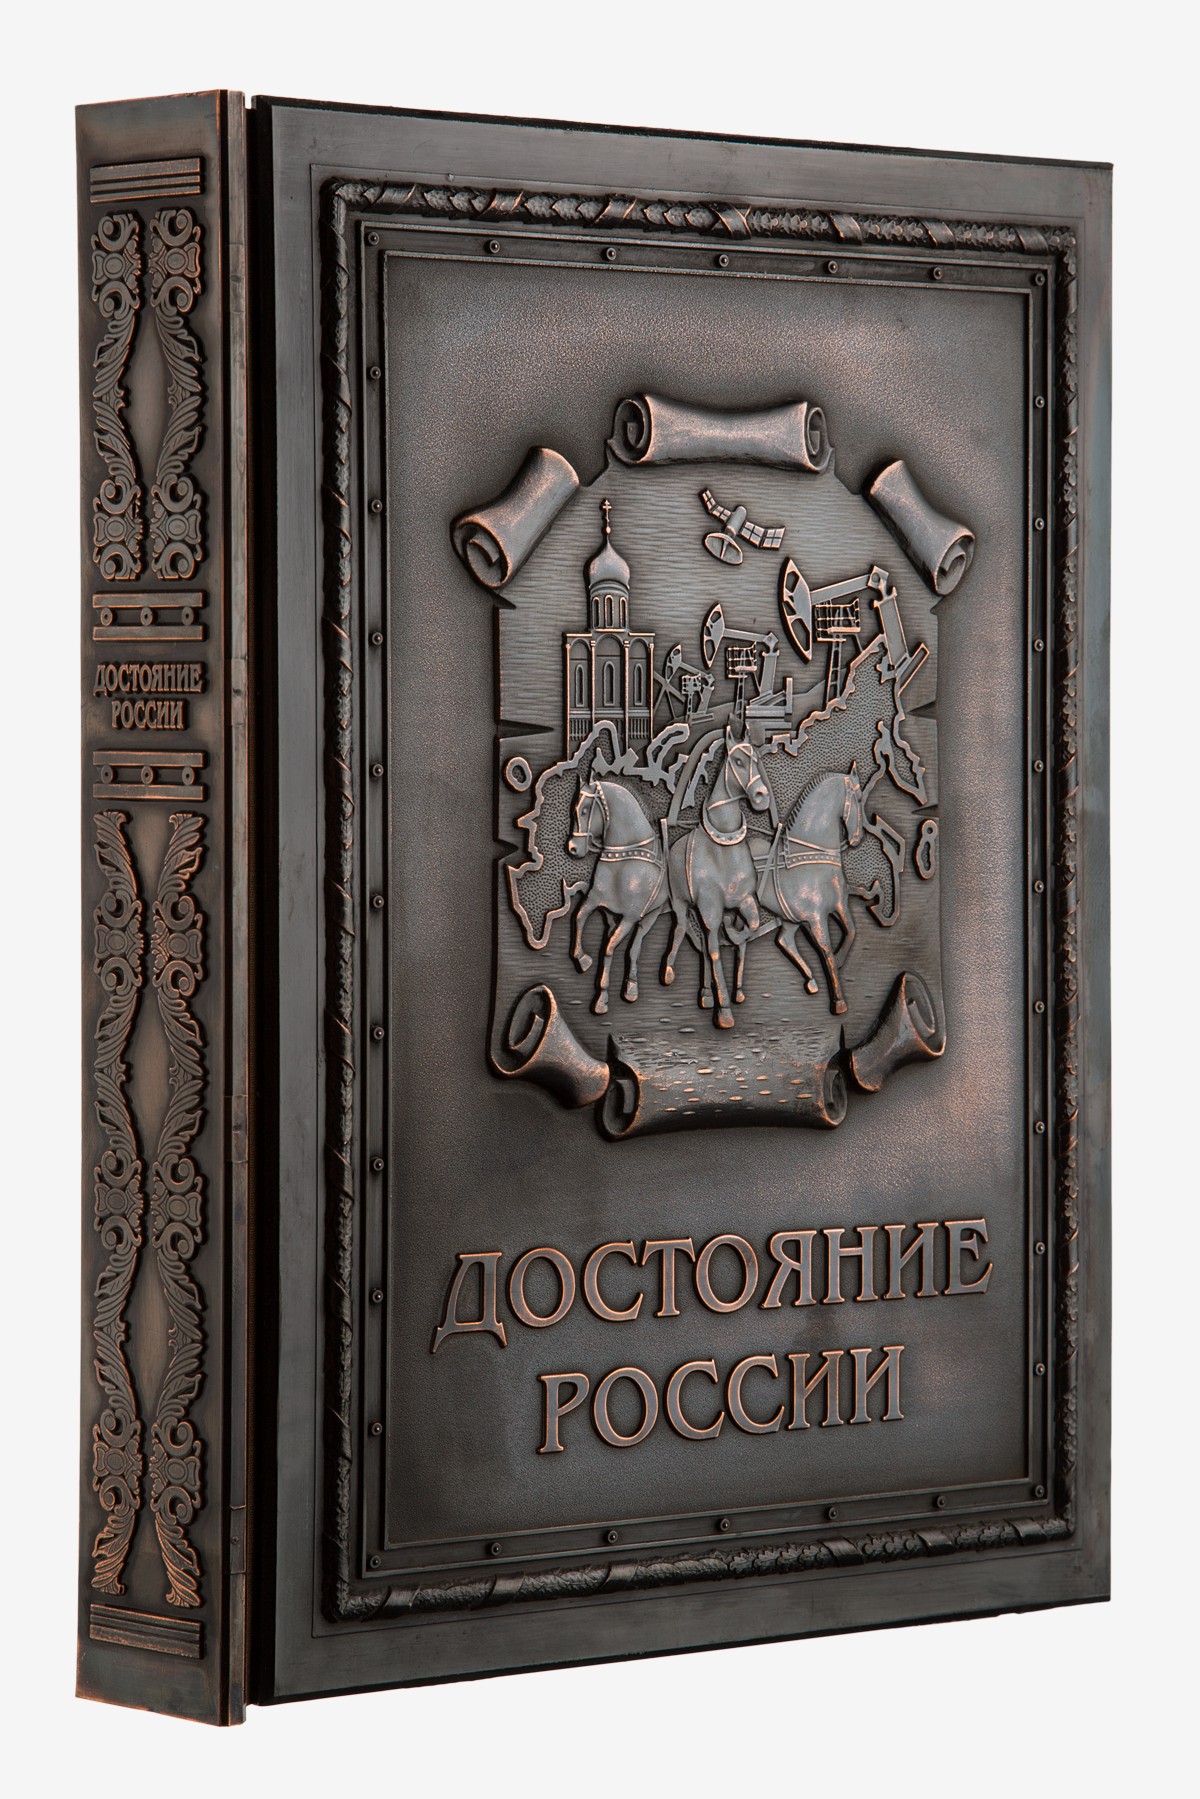 Достояние России - Подарочные книги в медном переплете